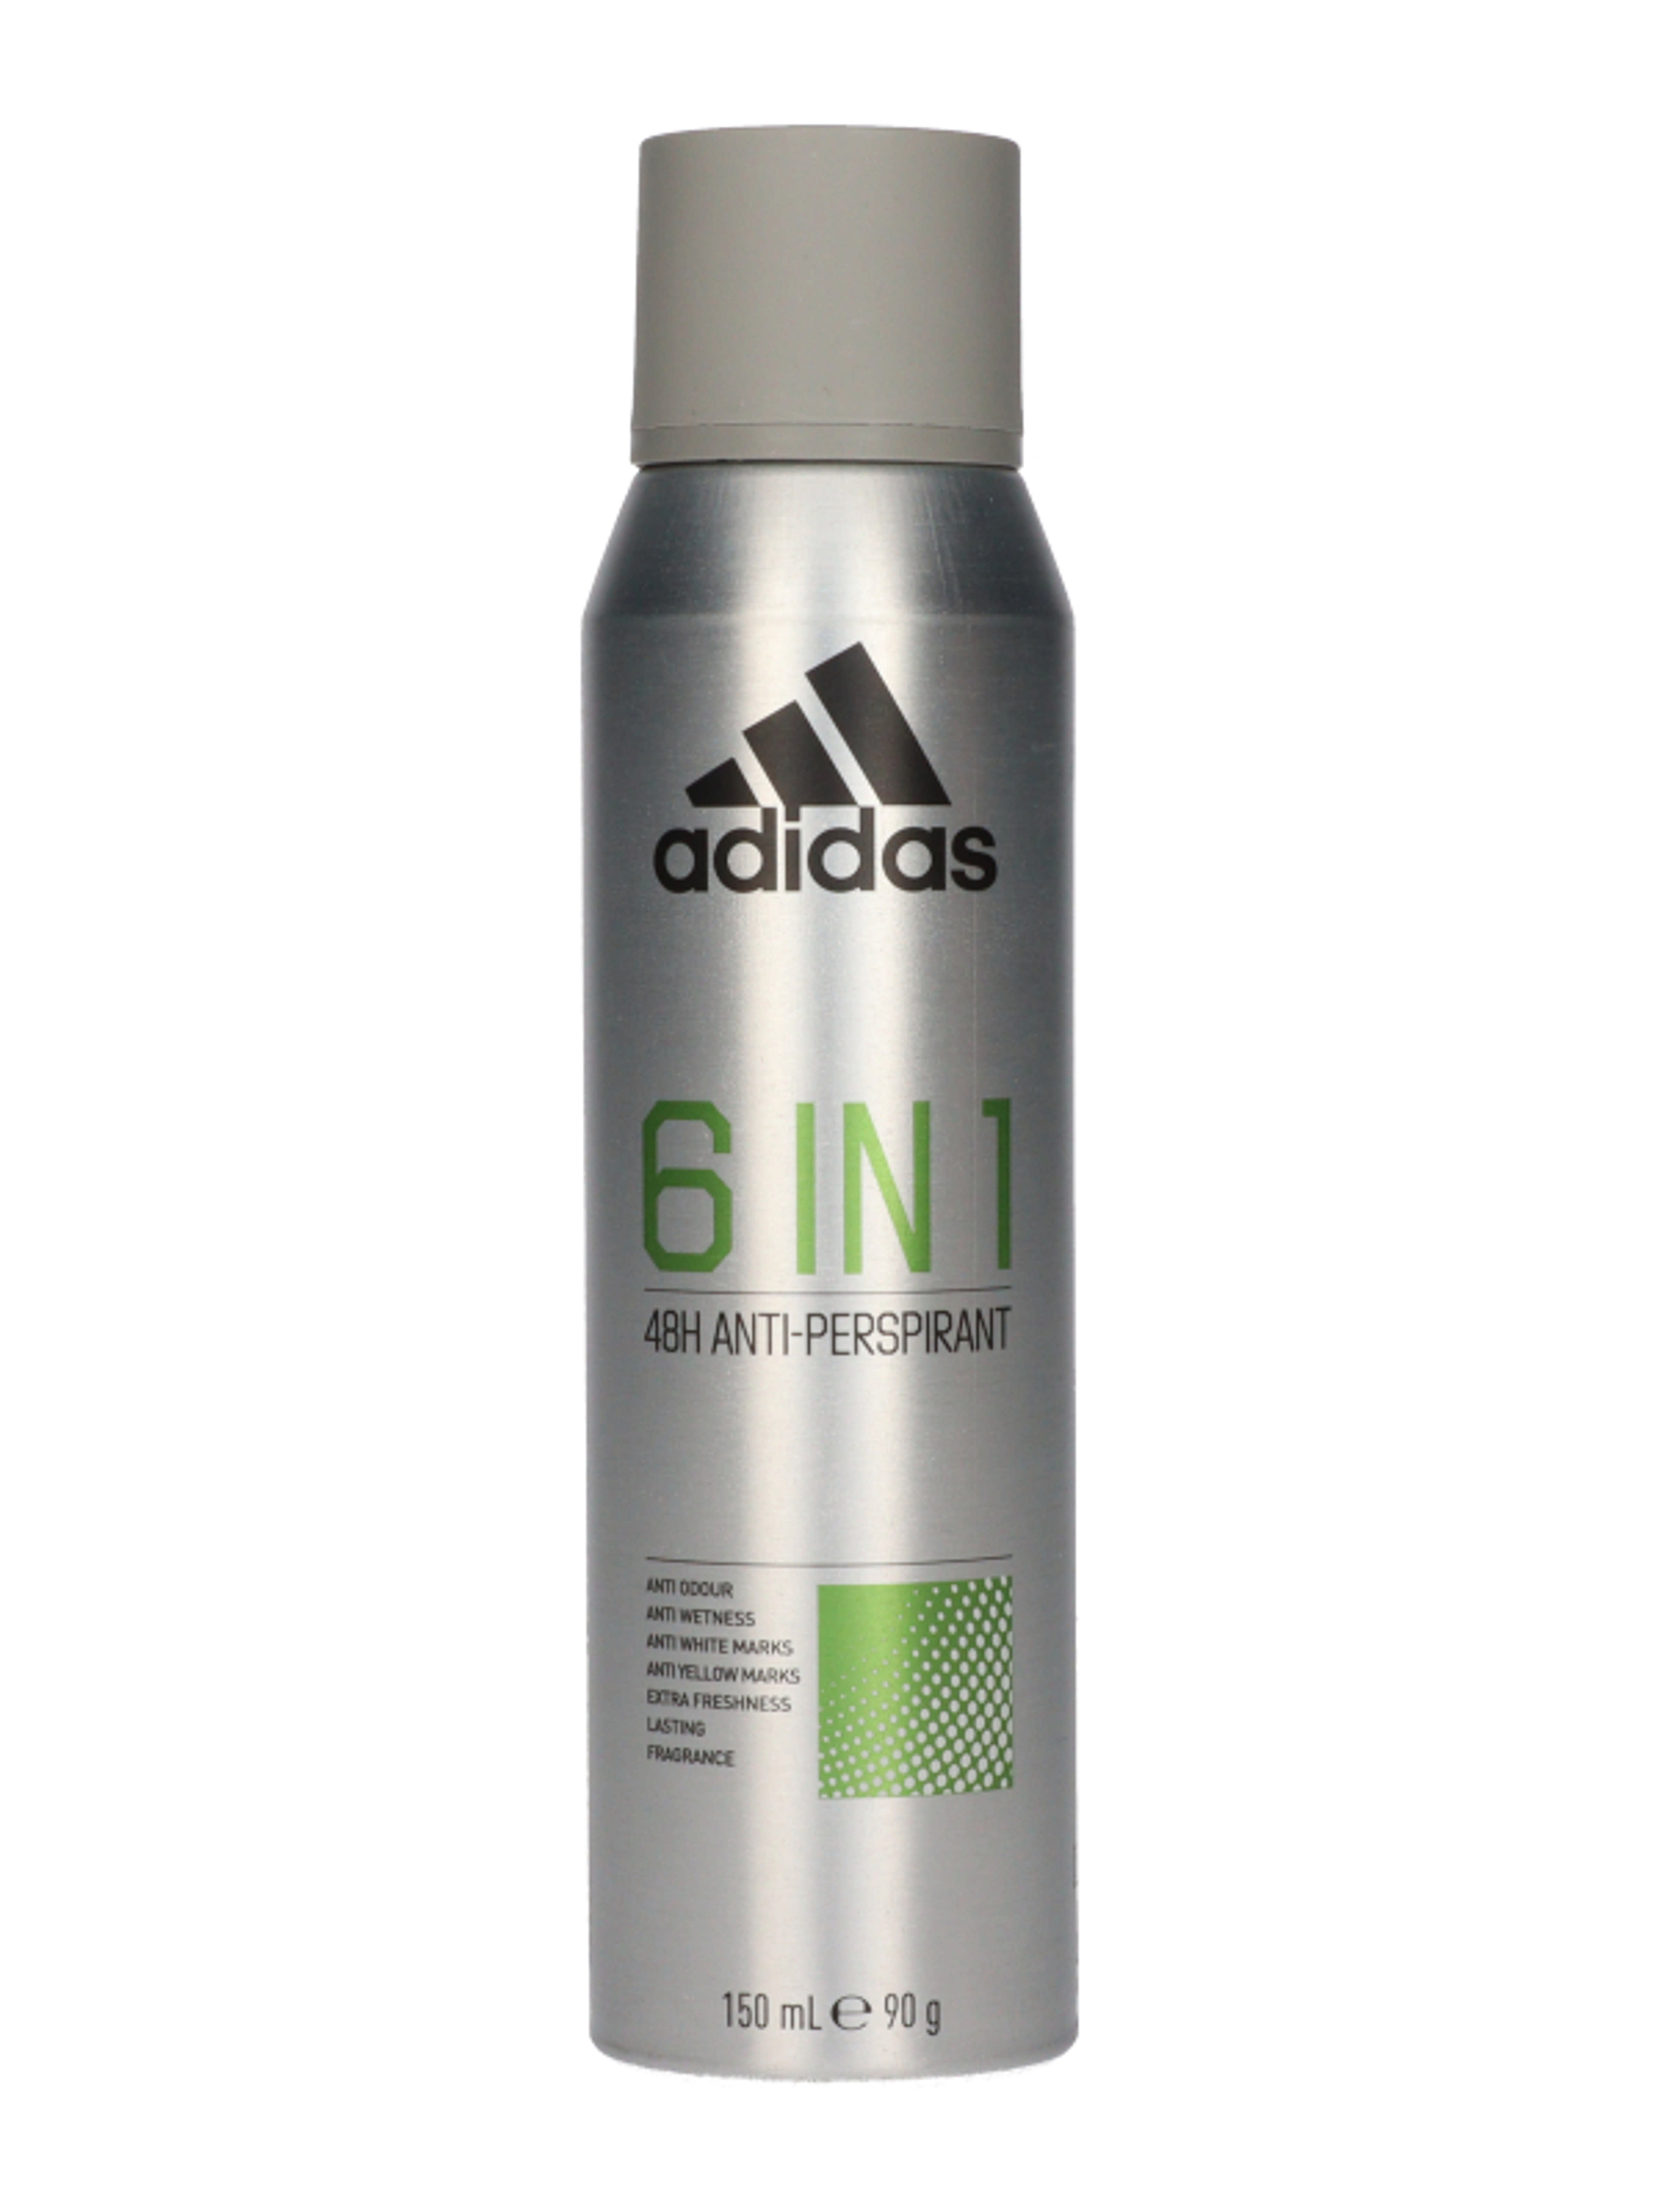 Adidas 6in1 férfi izzadásgátló dezodor - 150 ml